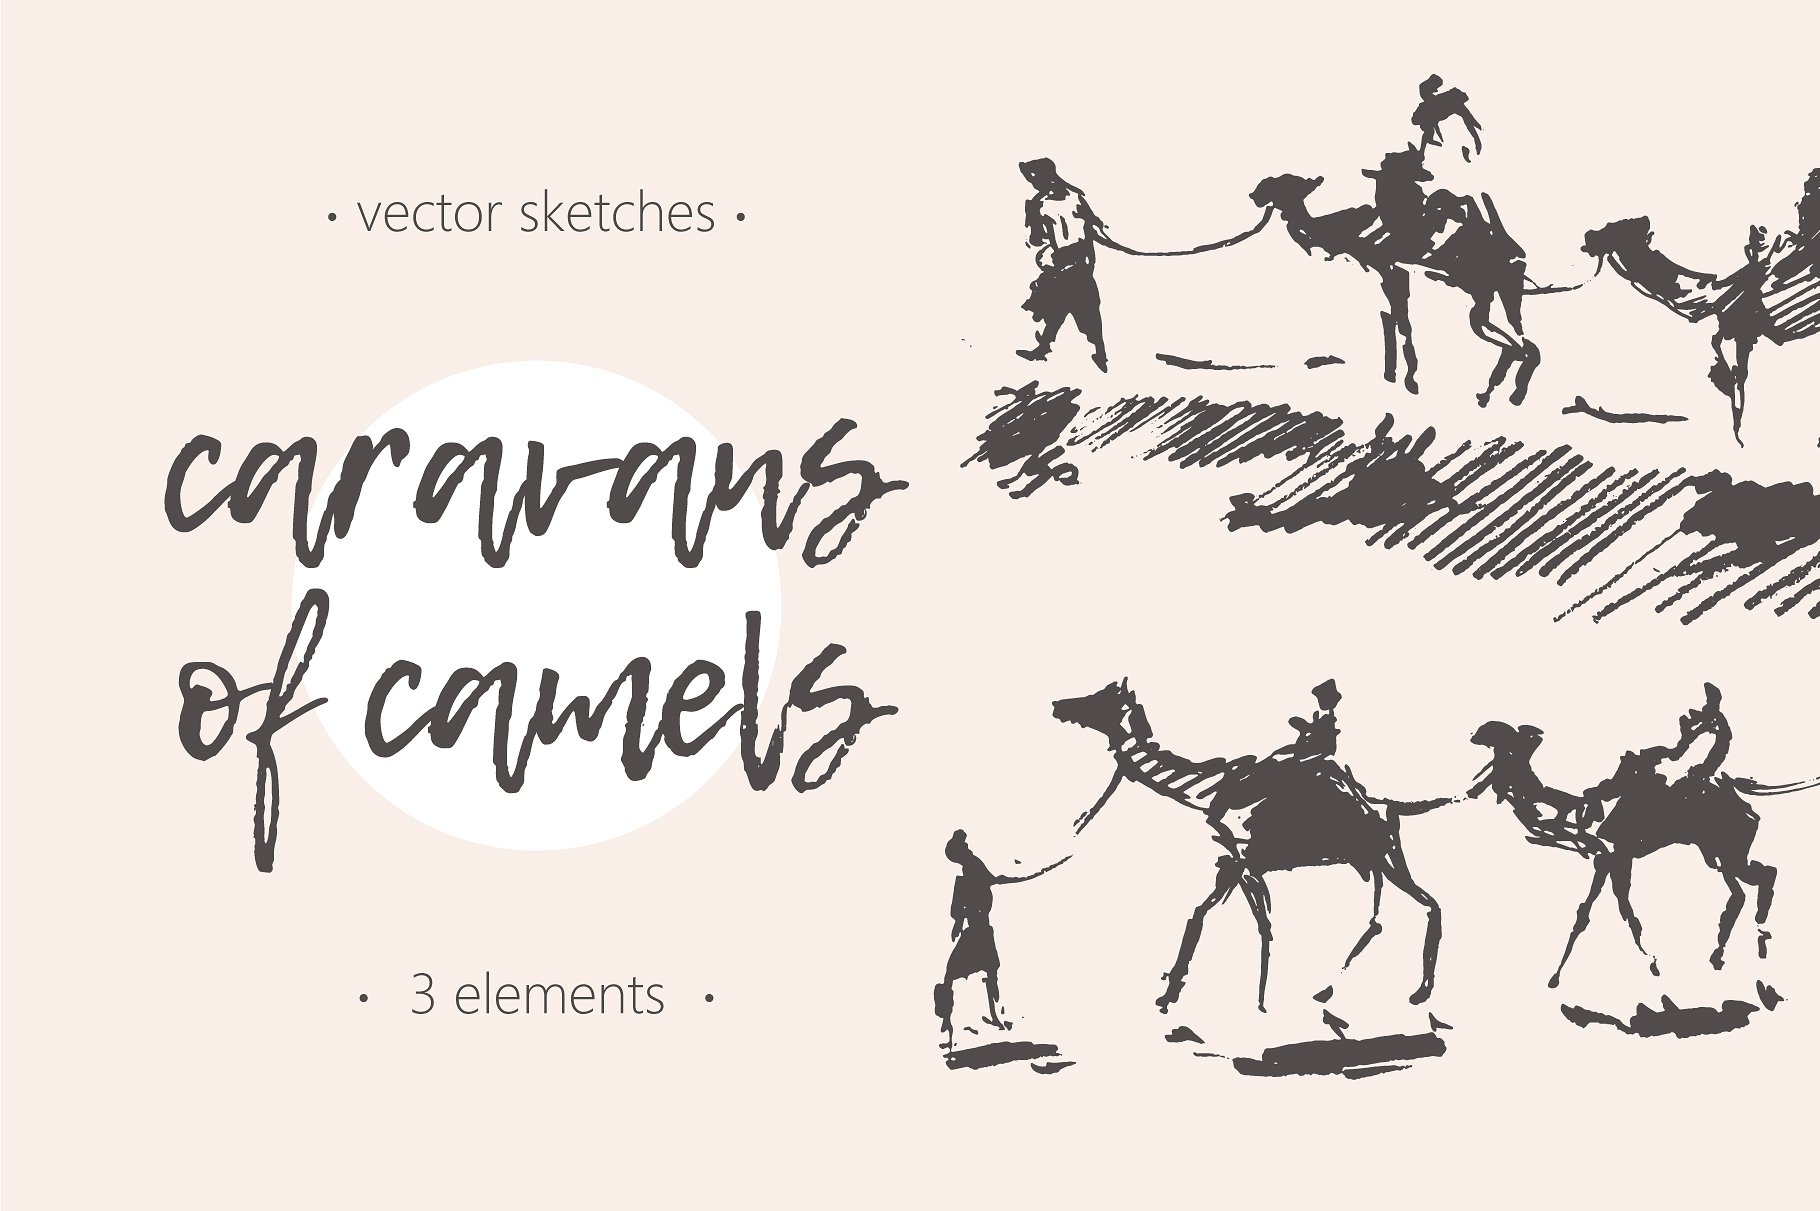 骆驼的商队素描插画 Caravans of camels #